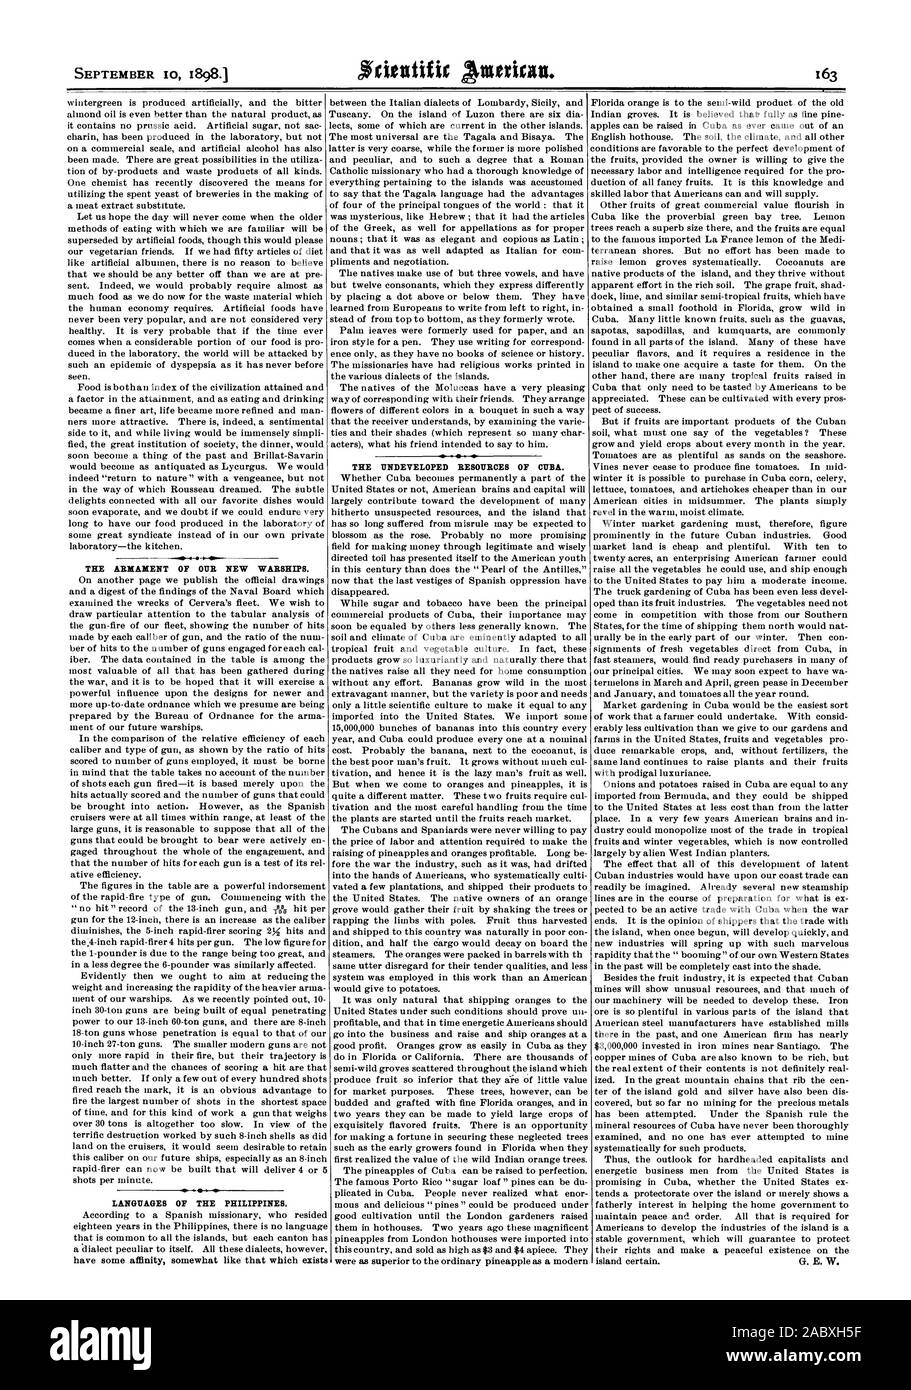 L'ARMEMENT DE NOS NOUVEAUX NAVIRES. Langues officielles DES PHILIPPINES. Les ressources inexploitées DE CUBA., Scientific American, 98-09-10 Banque D'Images